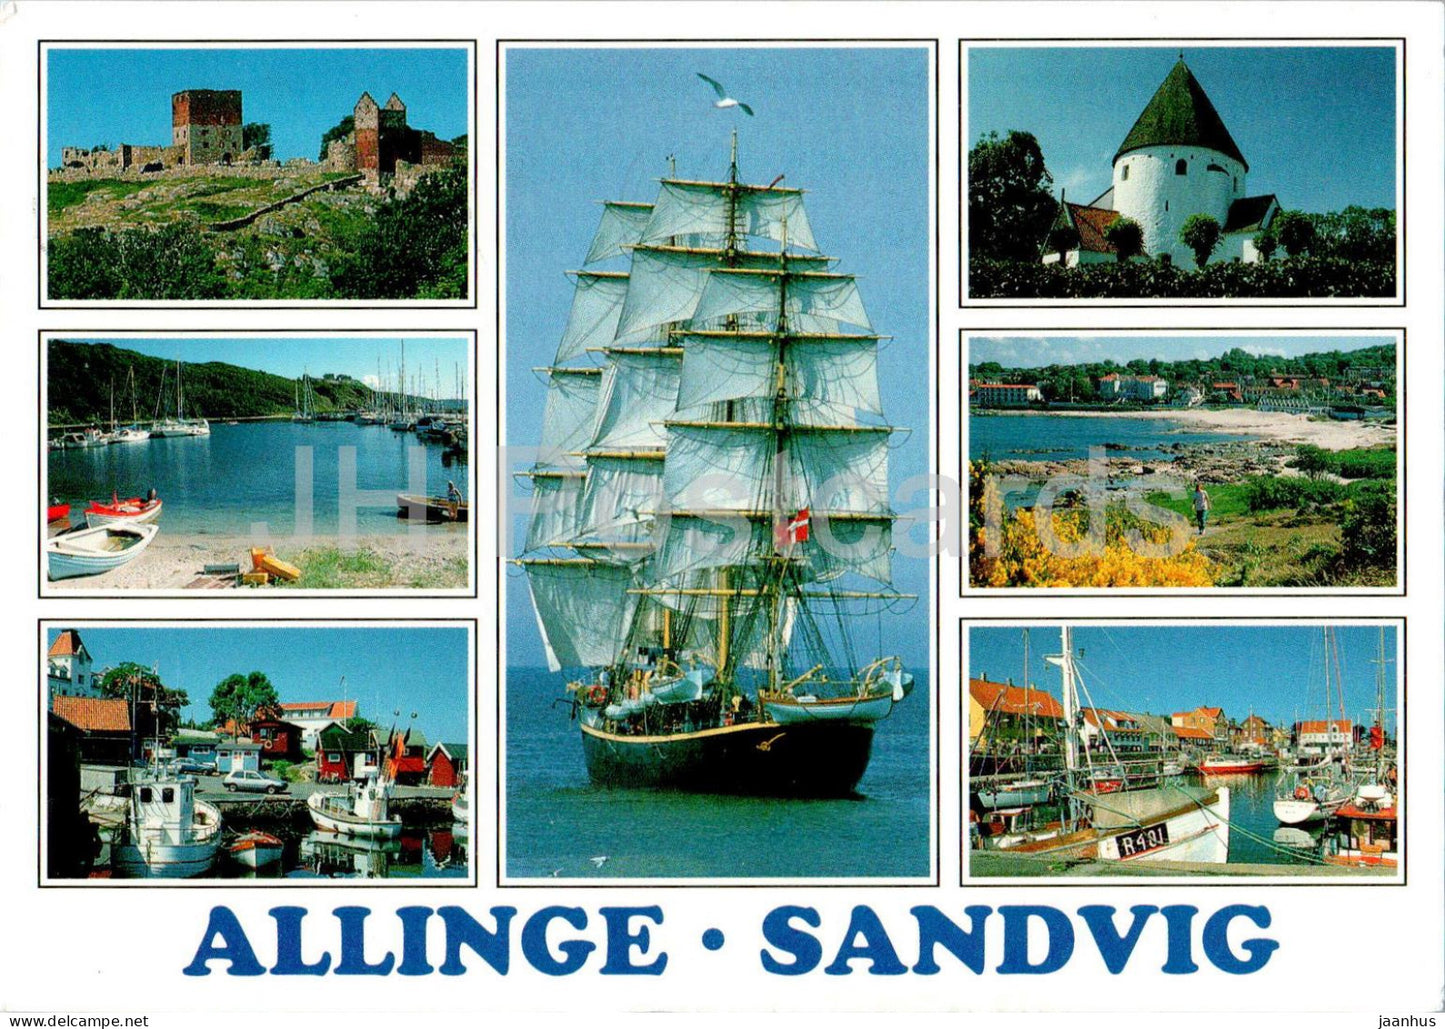 Allinge - Sandvig - boat - sailing ship - multiview - 6259 - 1998 - Denmark - used - JH Postcards